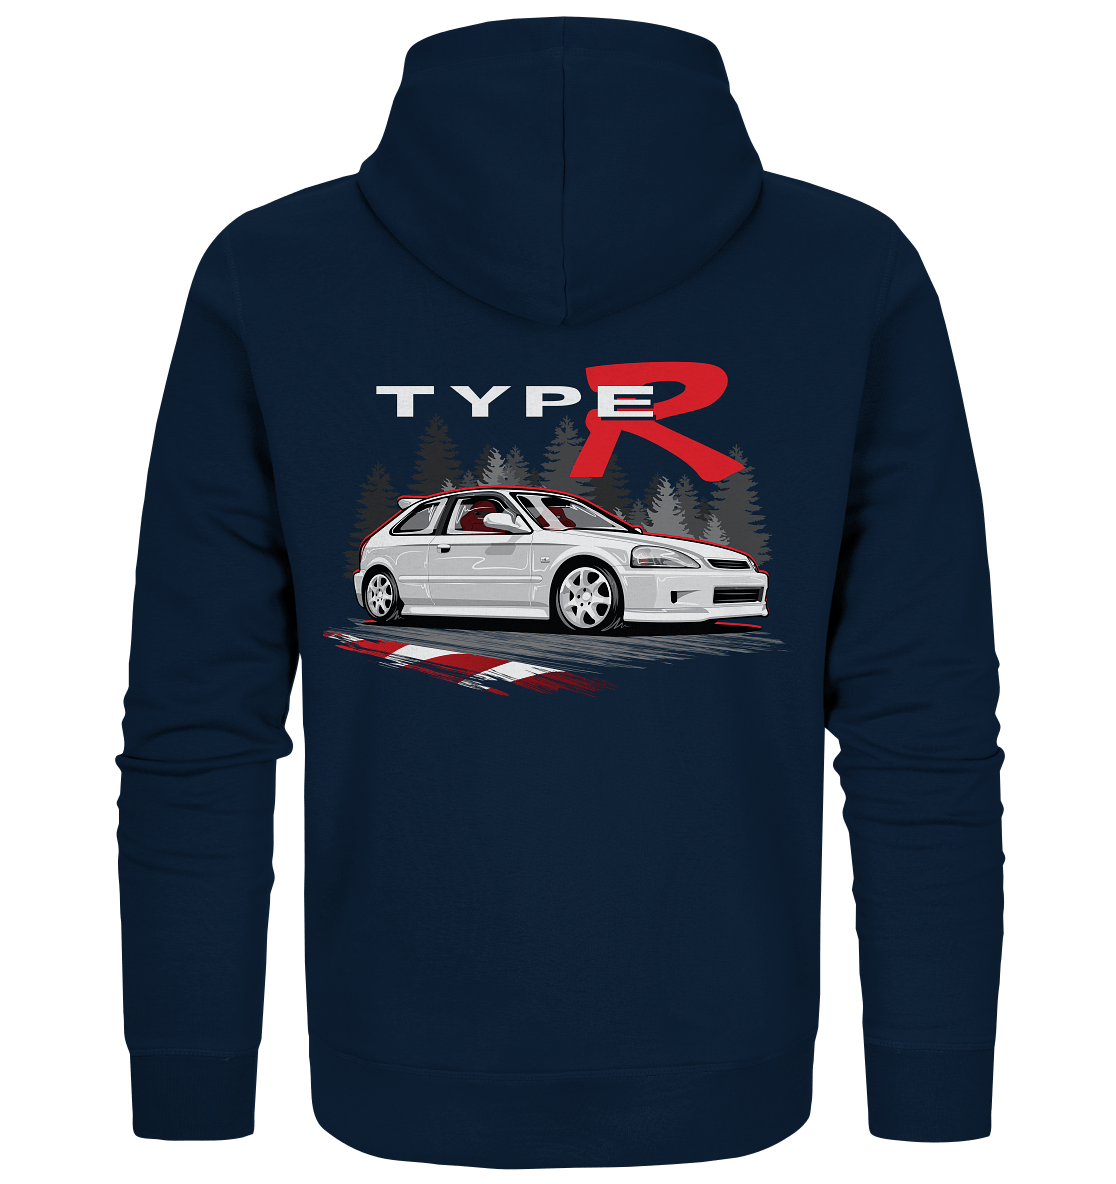 Civic Type-R EK9 - Organic Zipper - MotoMerch.de